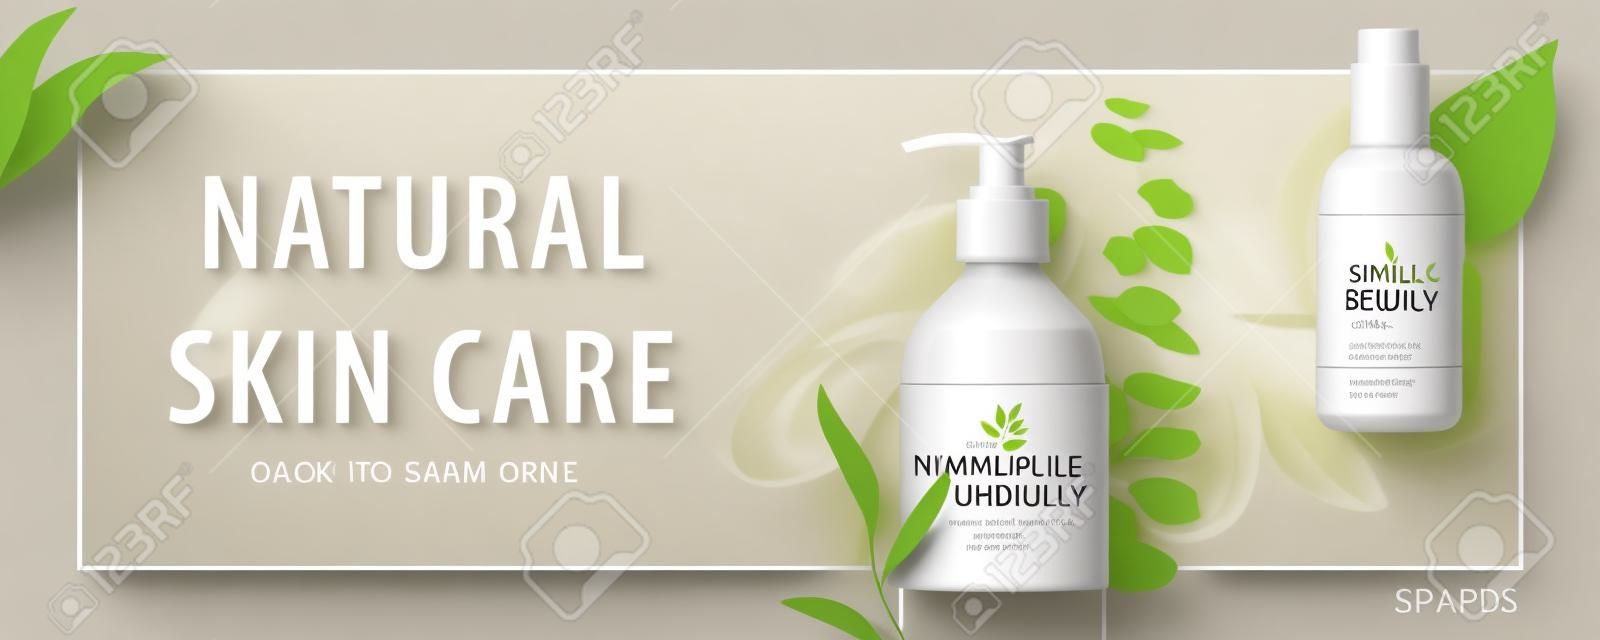 Banner de anúncio para produtos de beleza simples, mock-ups decorados com folhas naturais e traços de creme, conceito de cuidados com a pele orgânicos, ilustração 3d